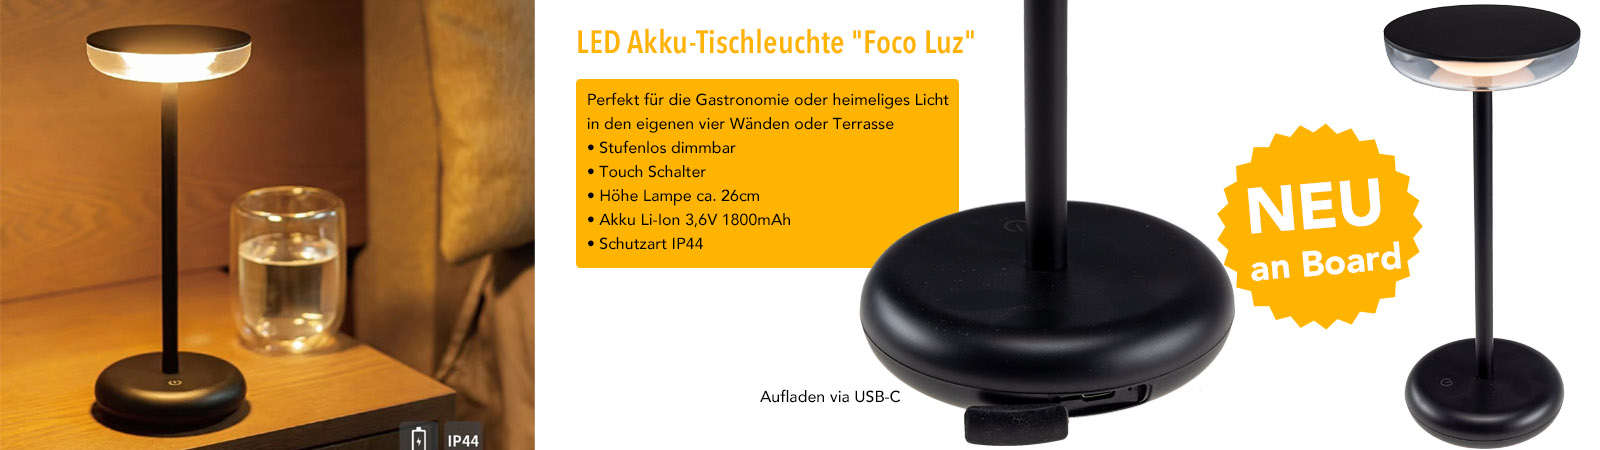 LED Akku Tischleuchte Foco Luz